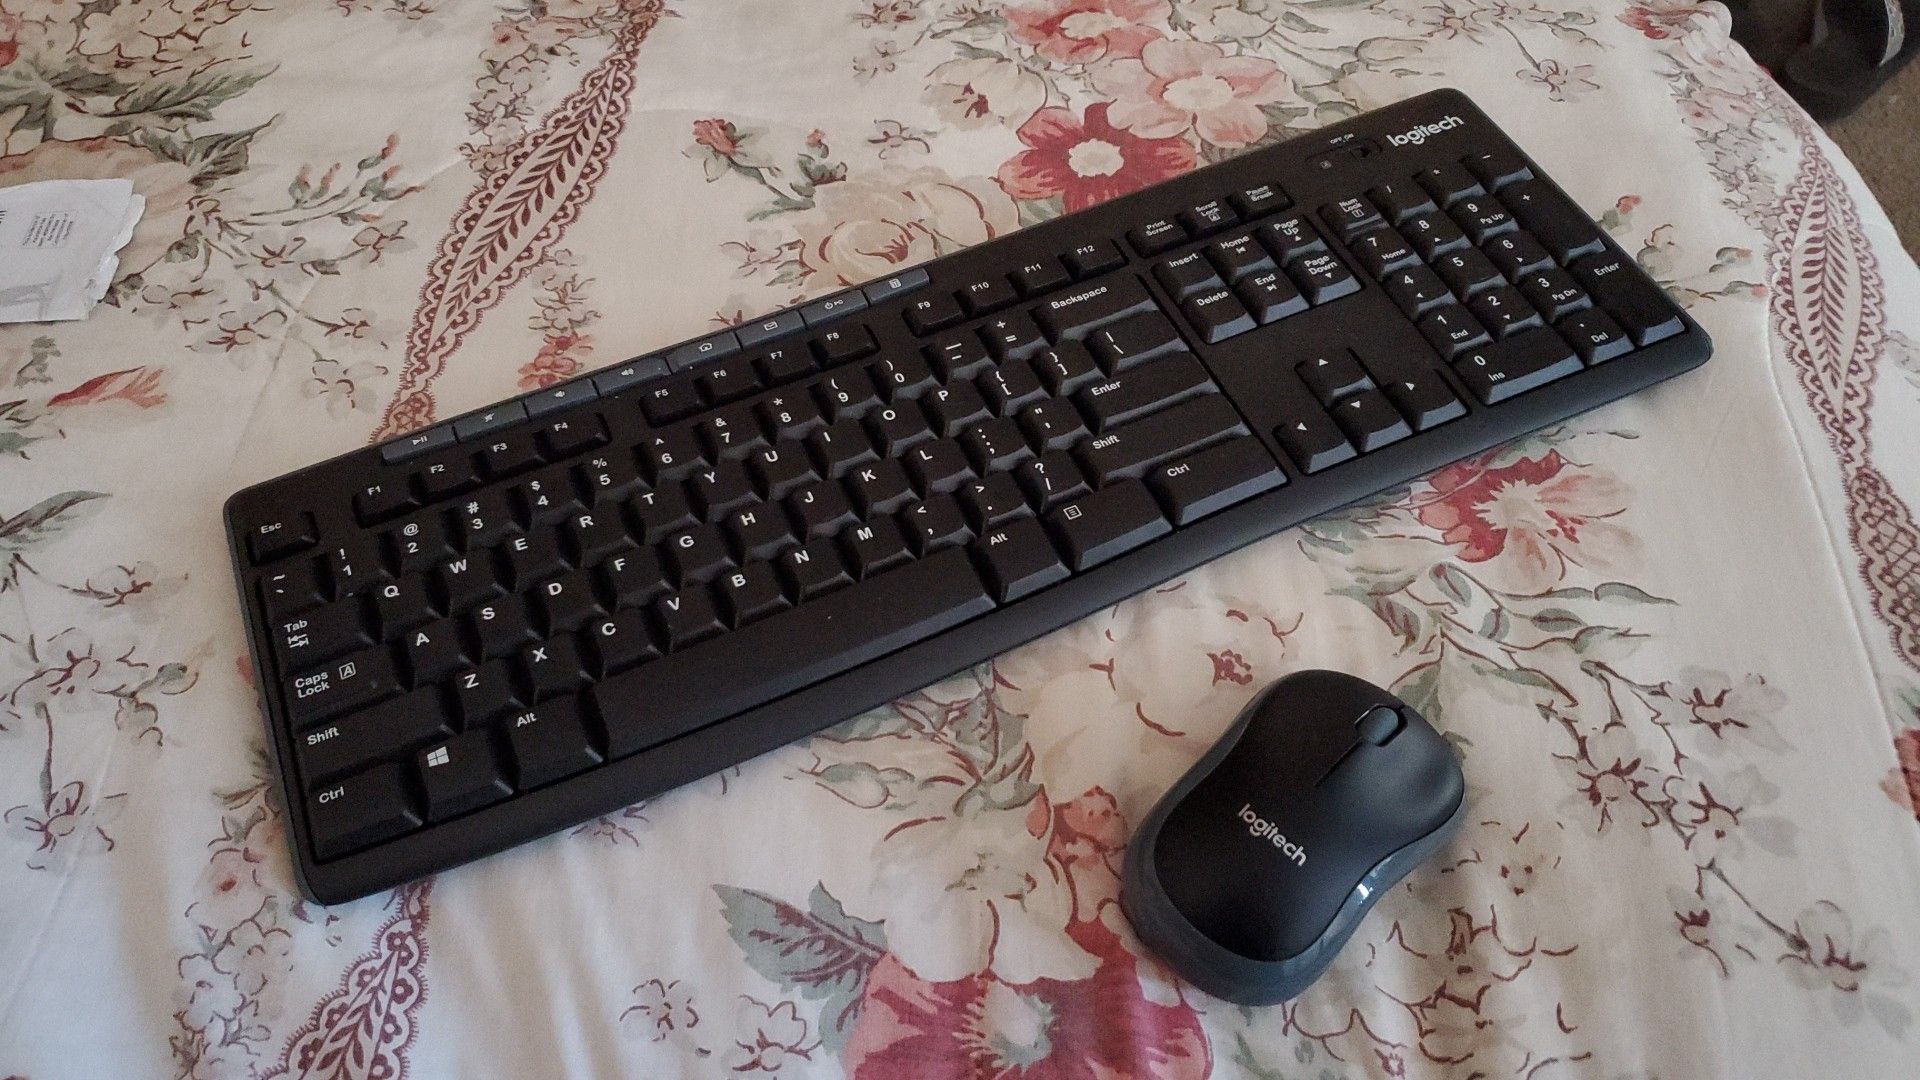 Logitech wireless mouse and keyboard